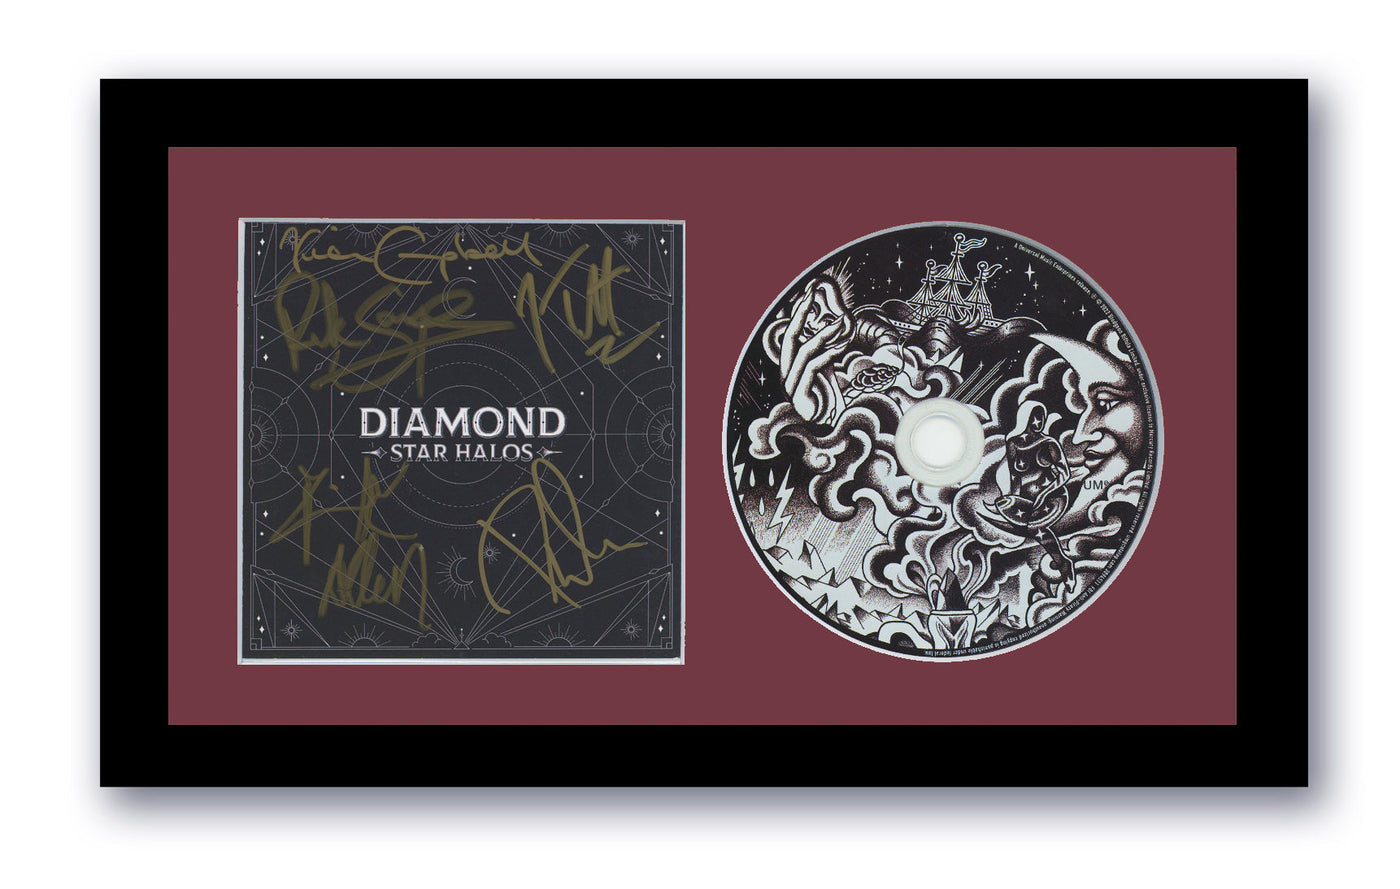 Def Leppard Autographed Signed 7x12 Framed CD Diamond Star Halos ACOA